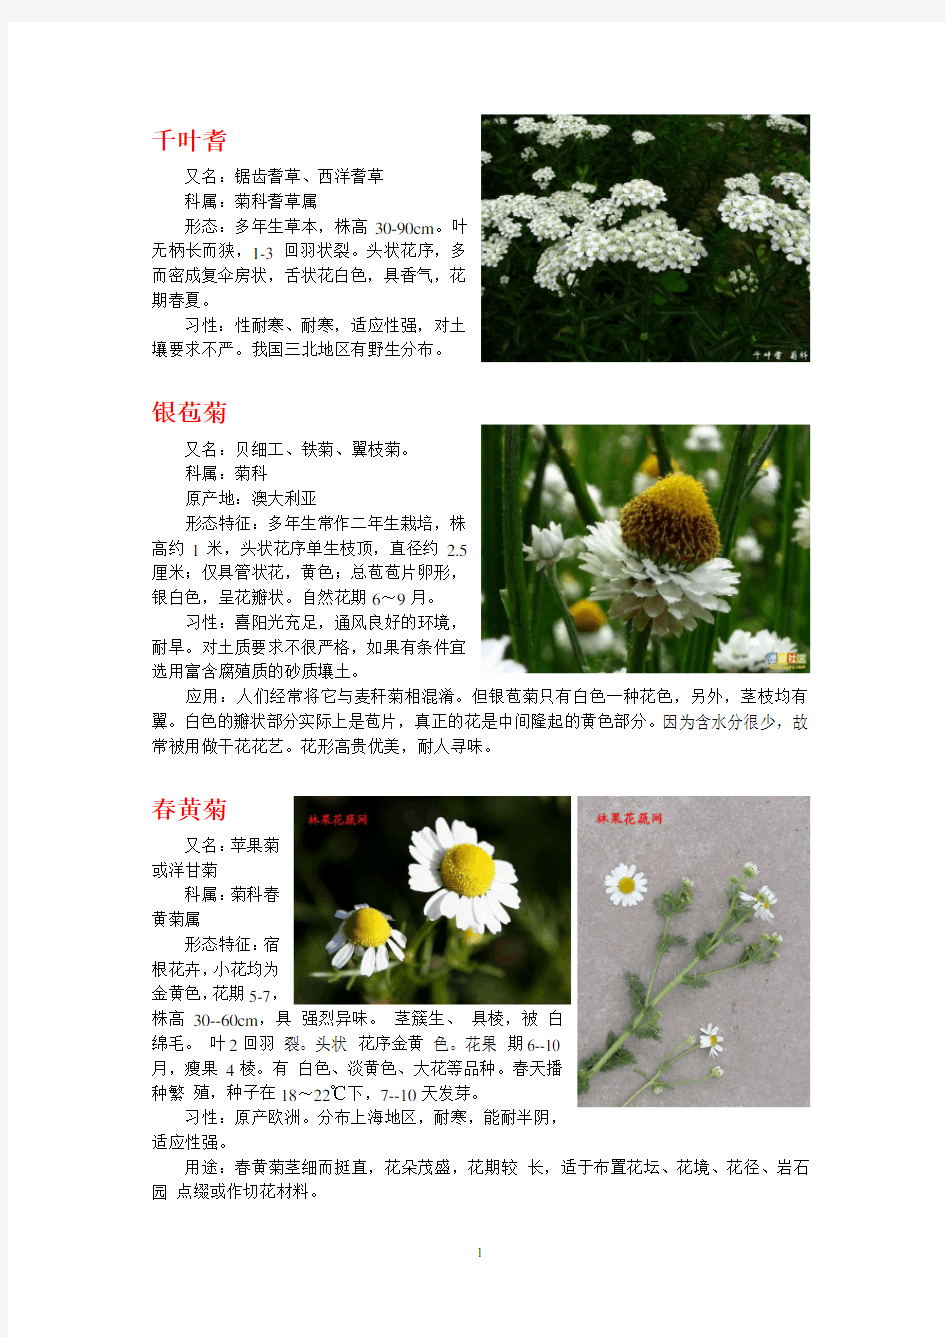 菊花品种分类